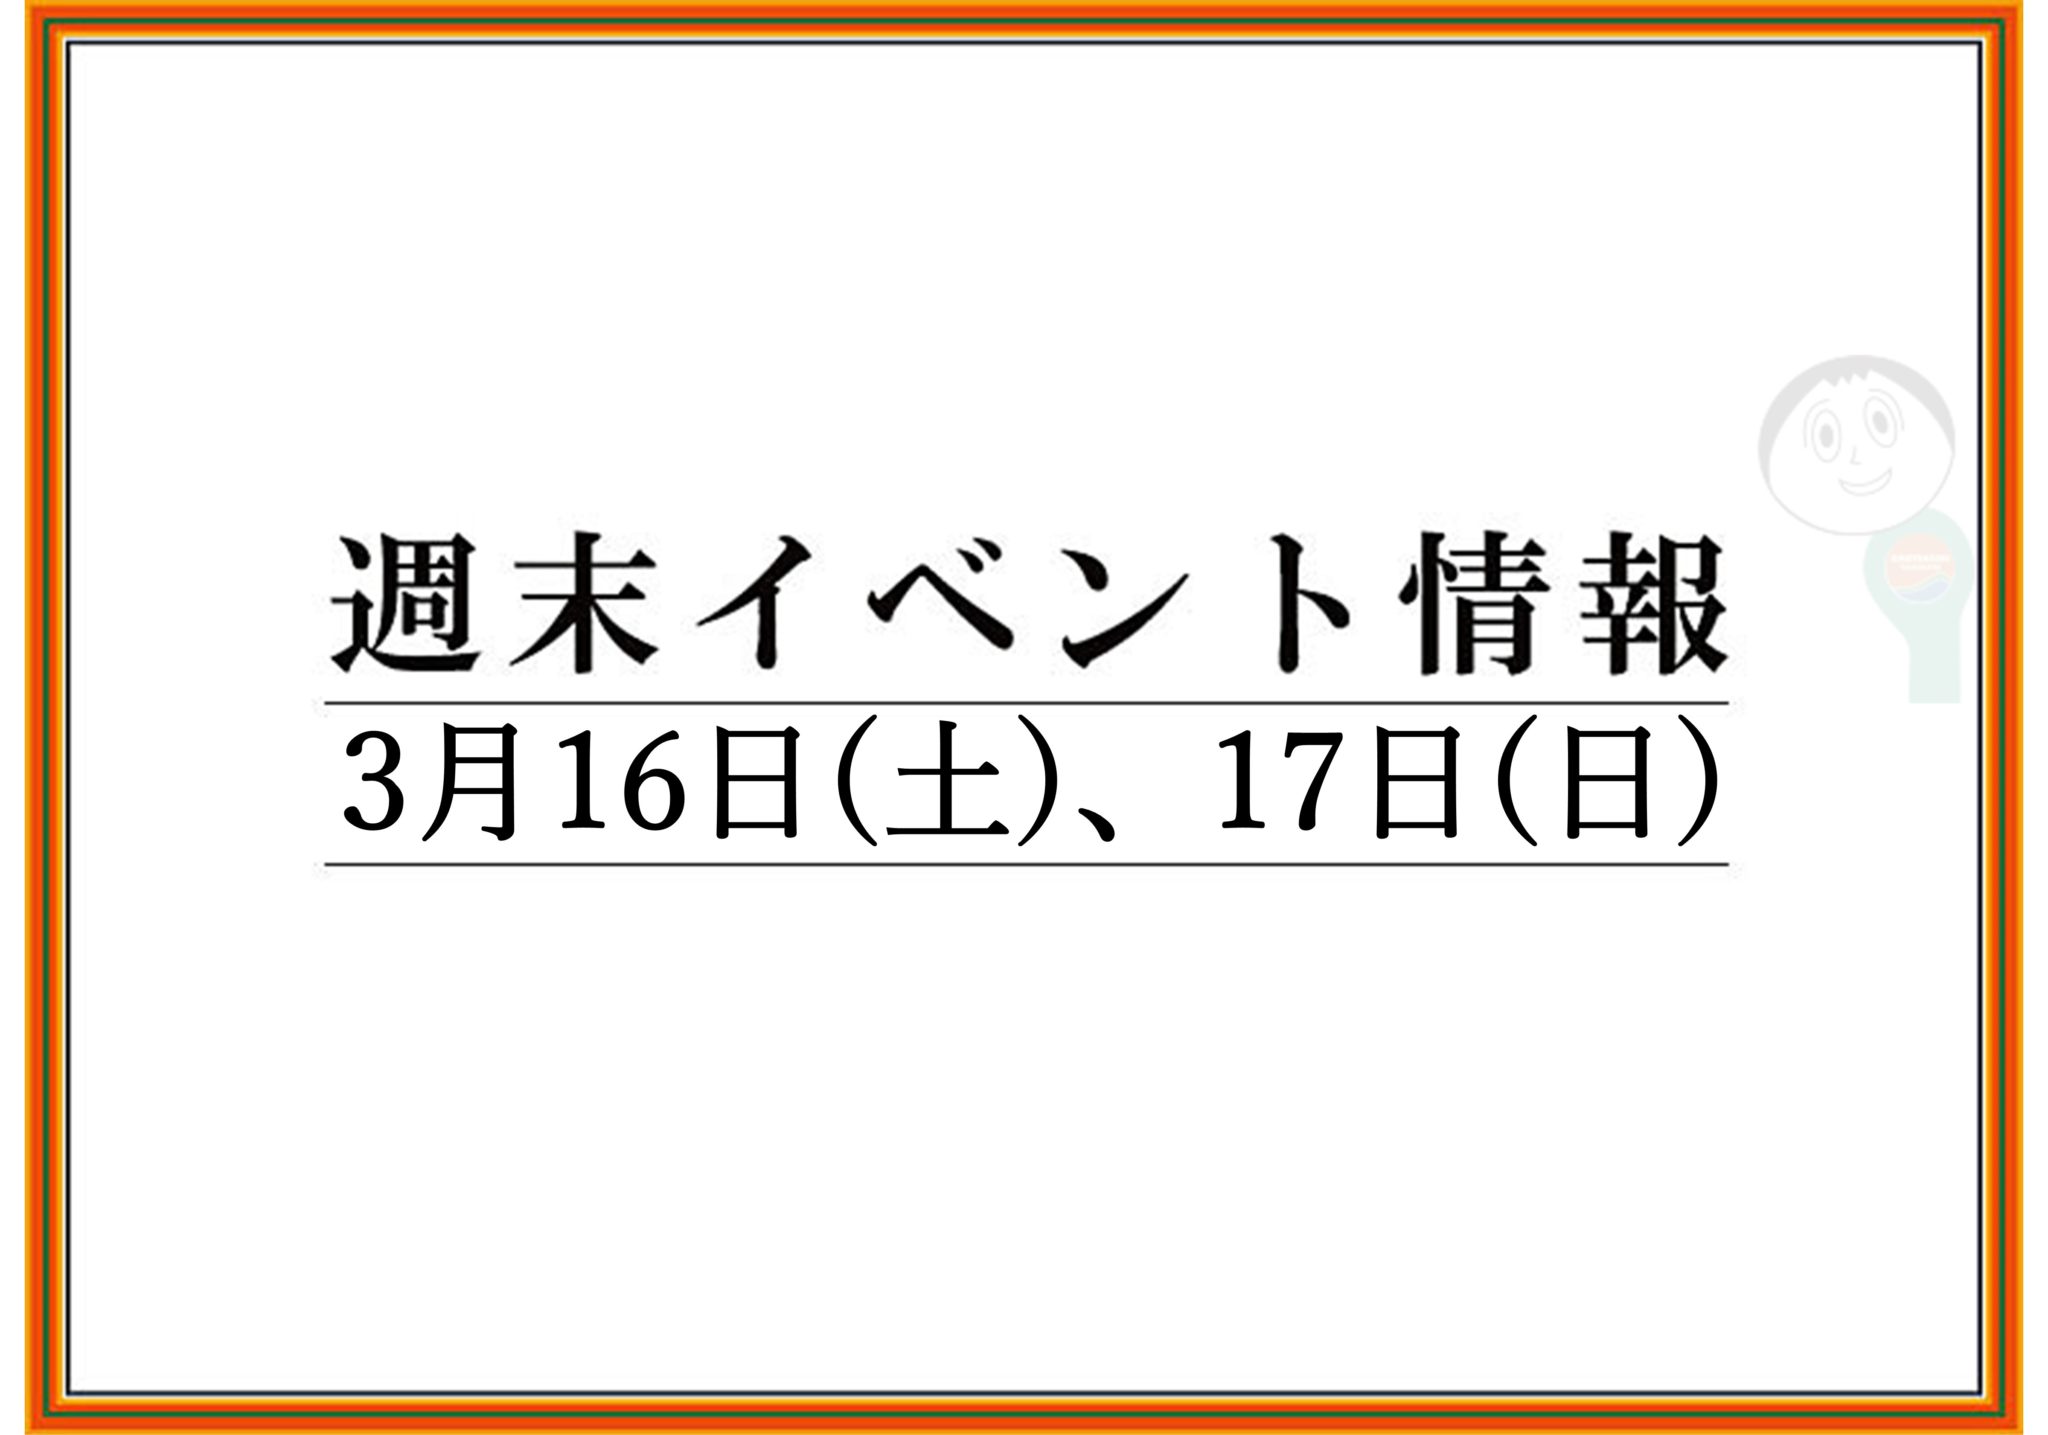 【まとめ】2019年 山形/上山/天童の週末イベント情報　3月16日(土),17日(日)